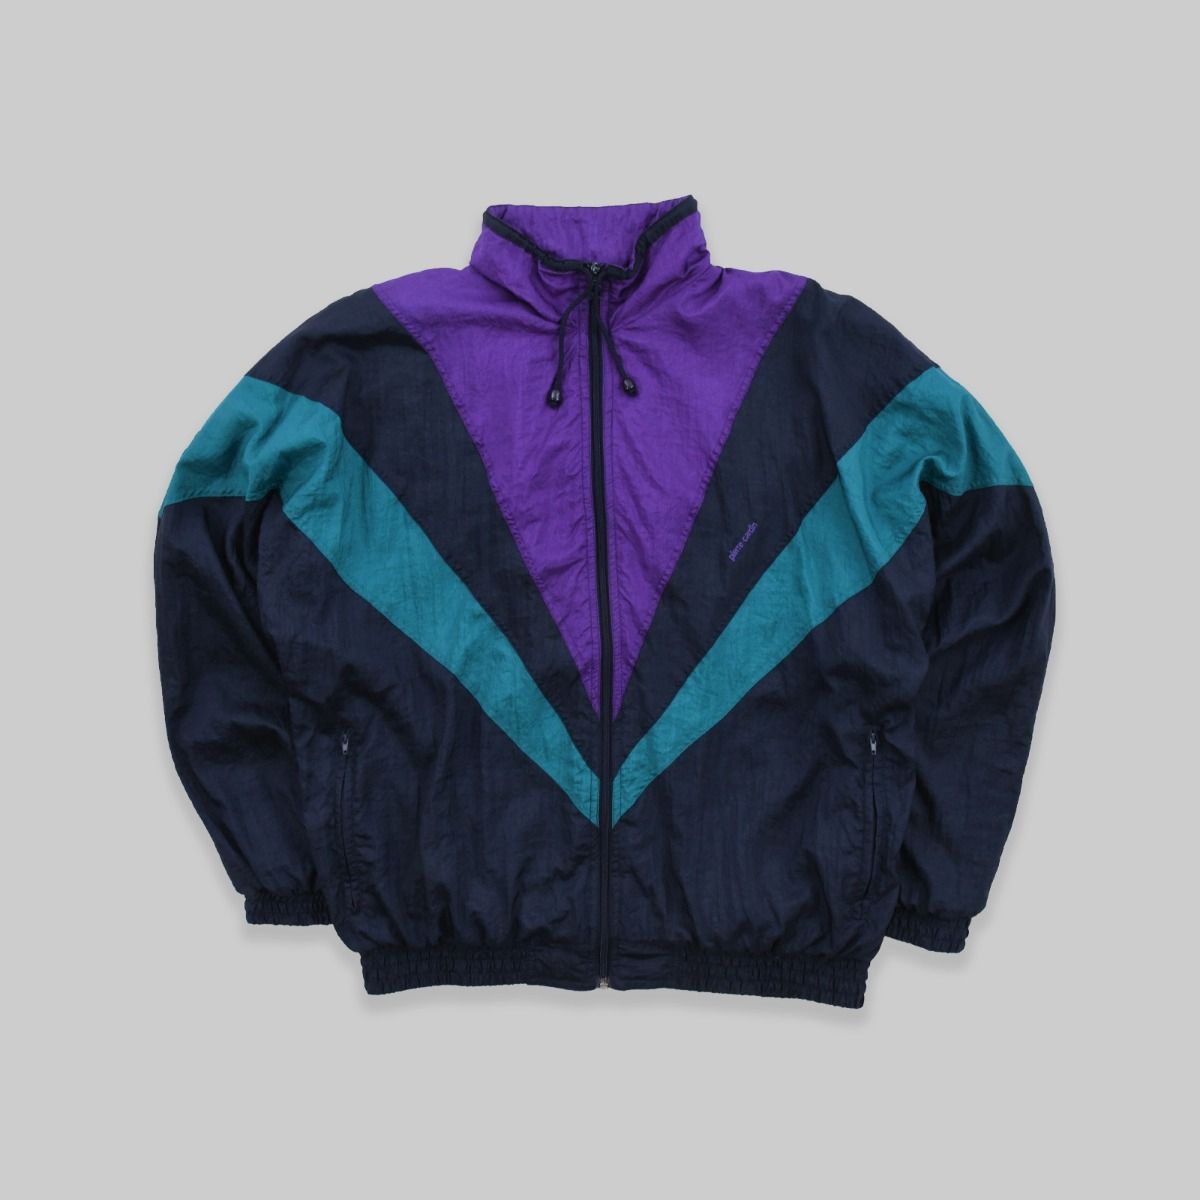 Pierre Cardin 1990s Track Jacket